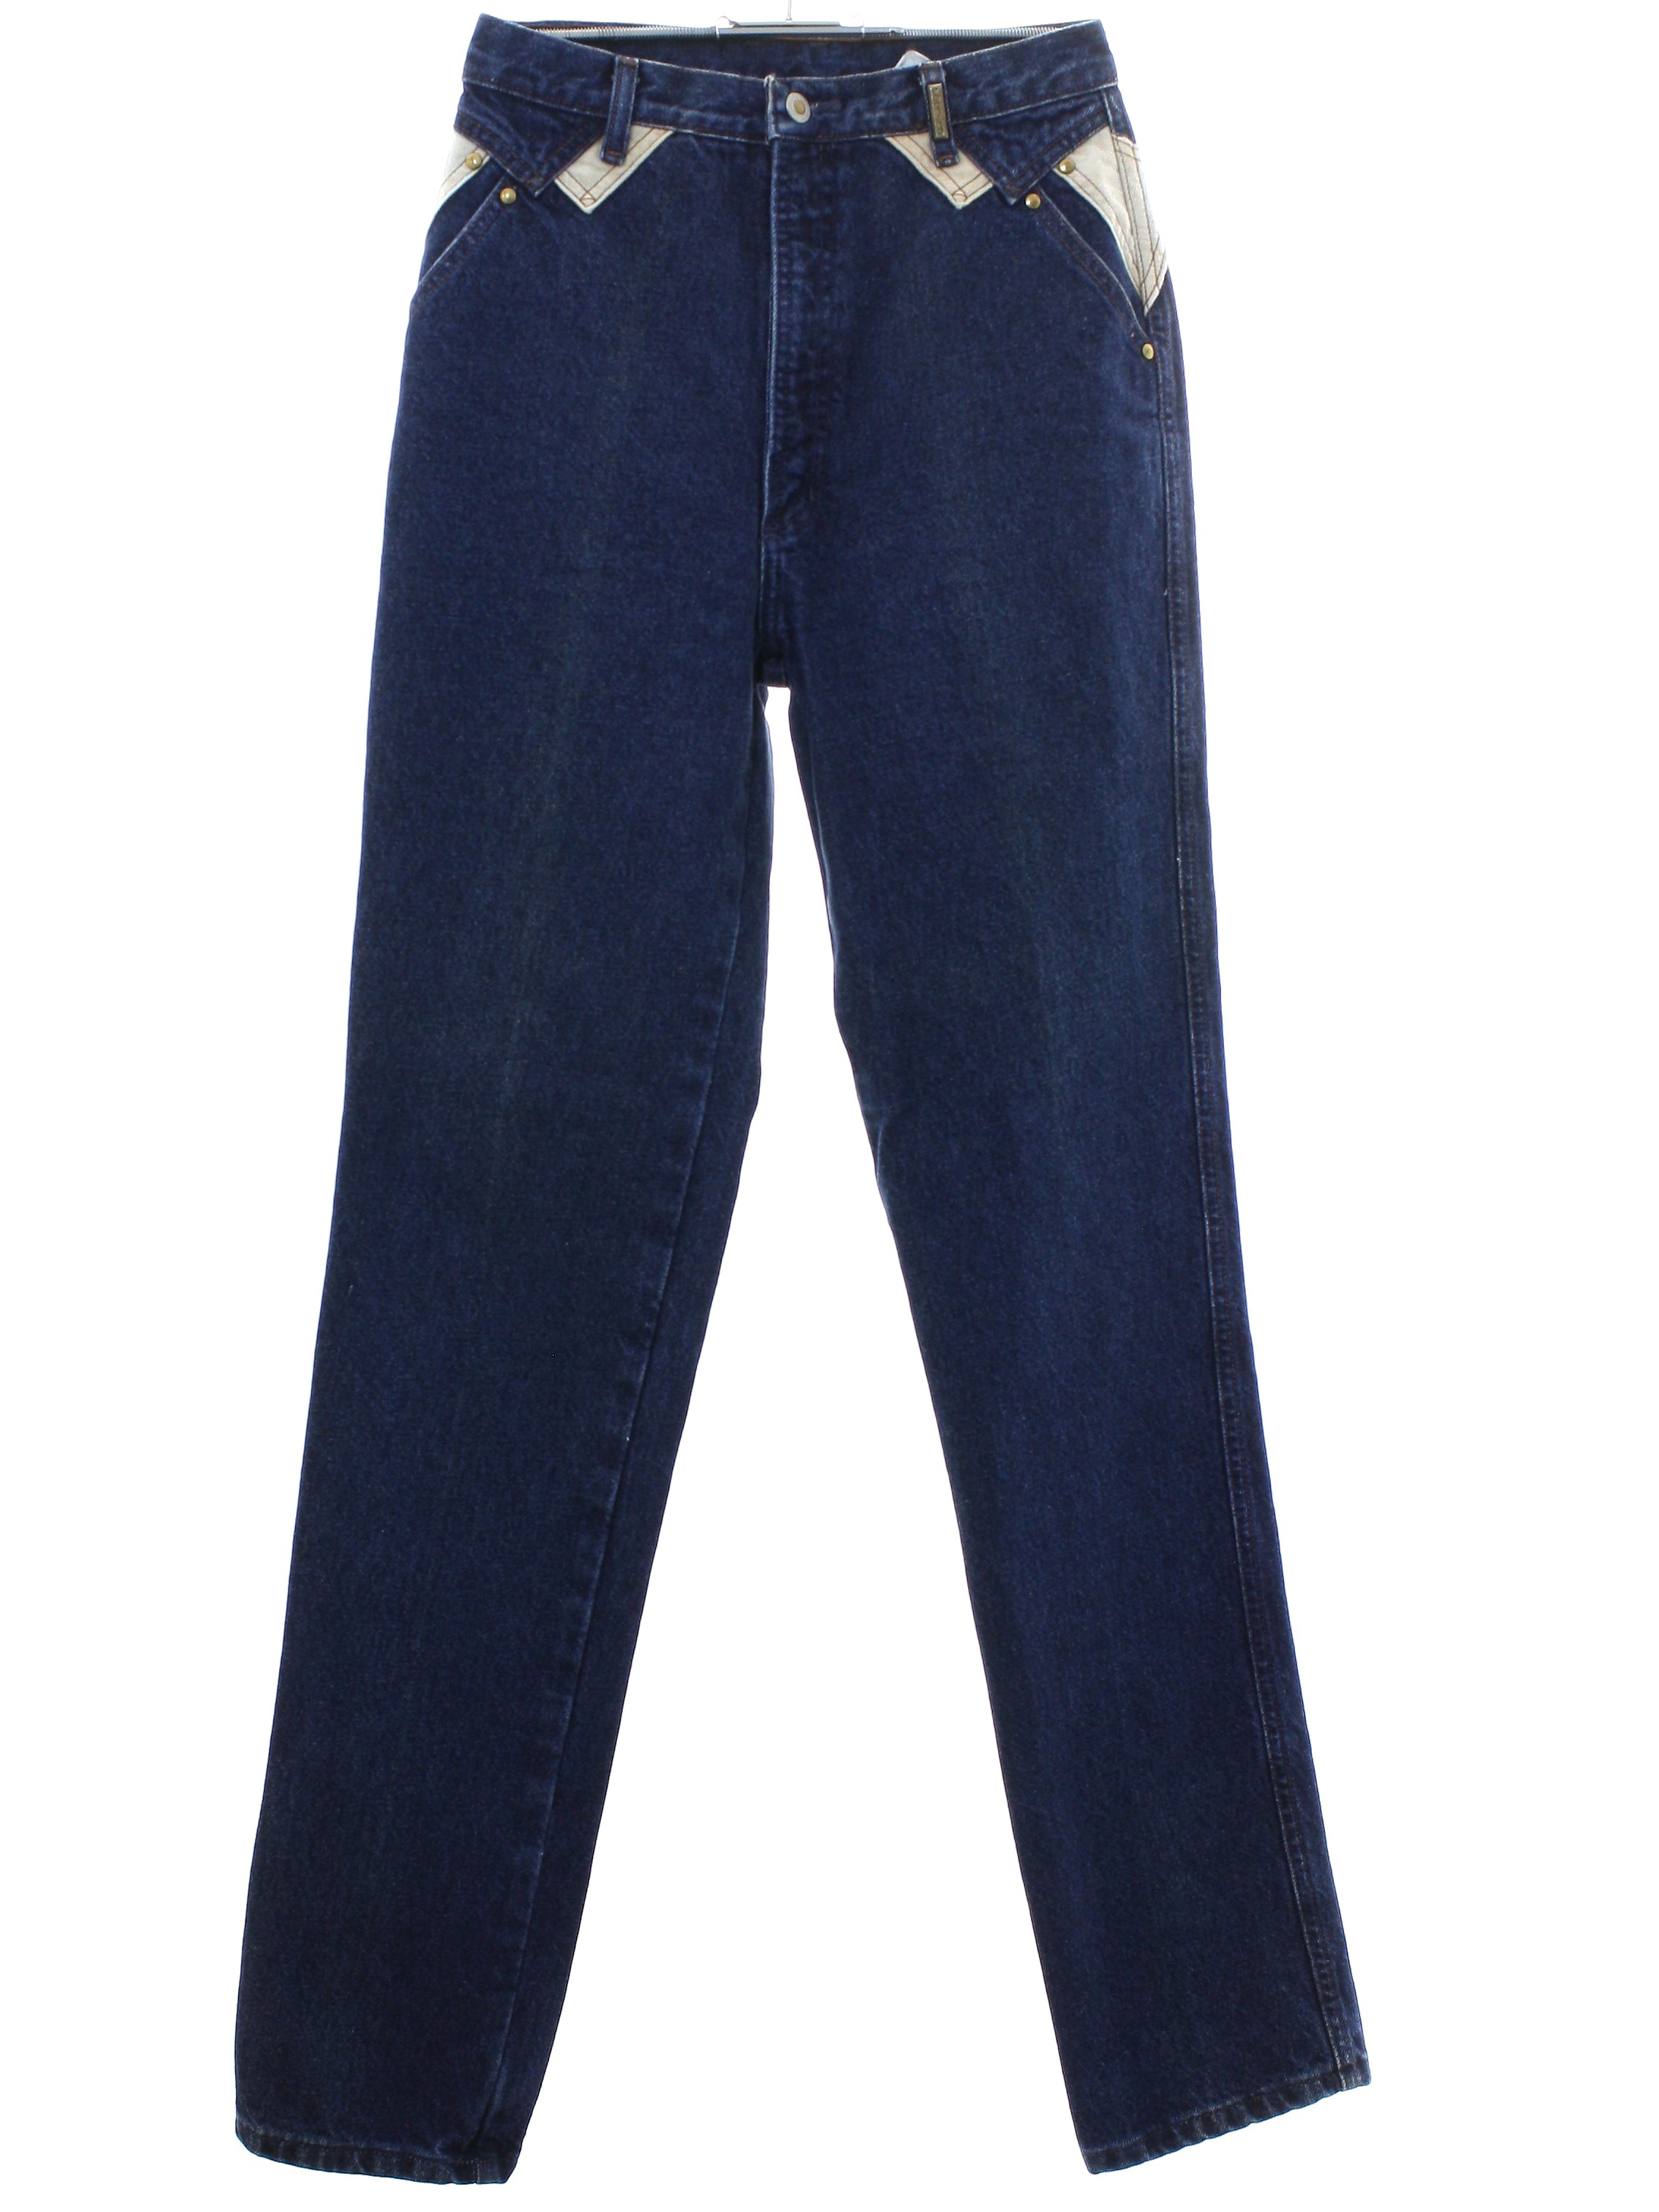 Rockies Jeanswear 90's Vintage Pants: 90s -Rockies Jeanswear- Womens ...